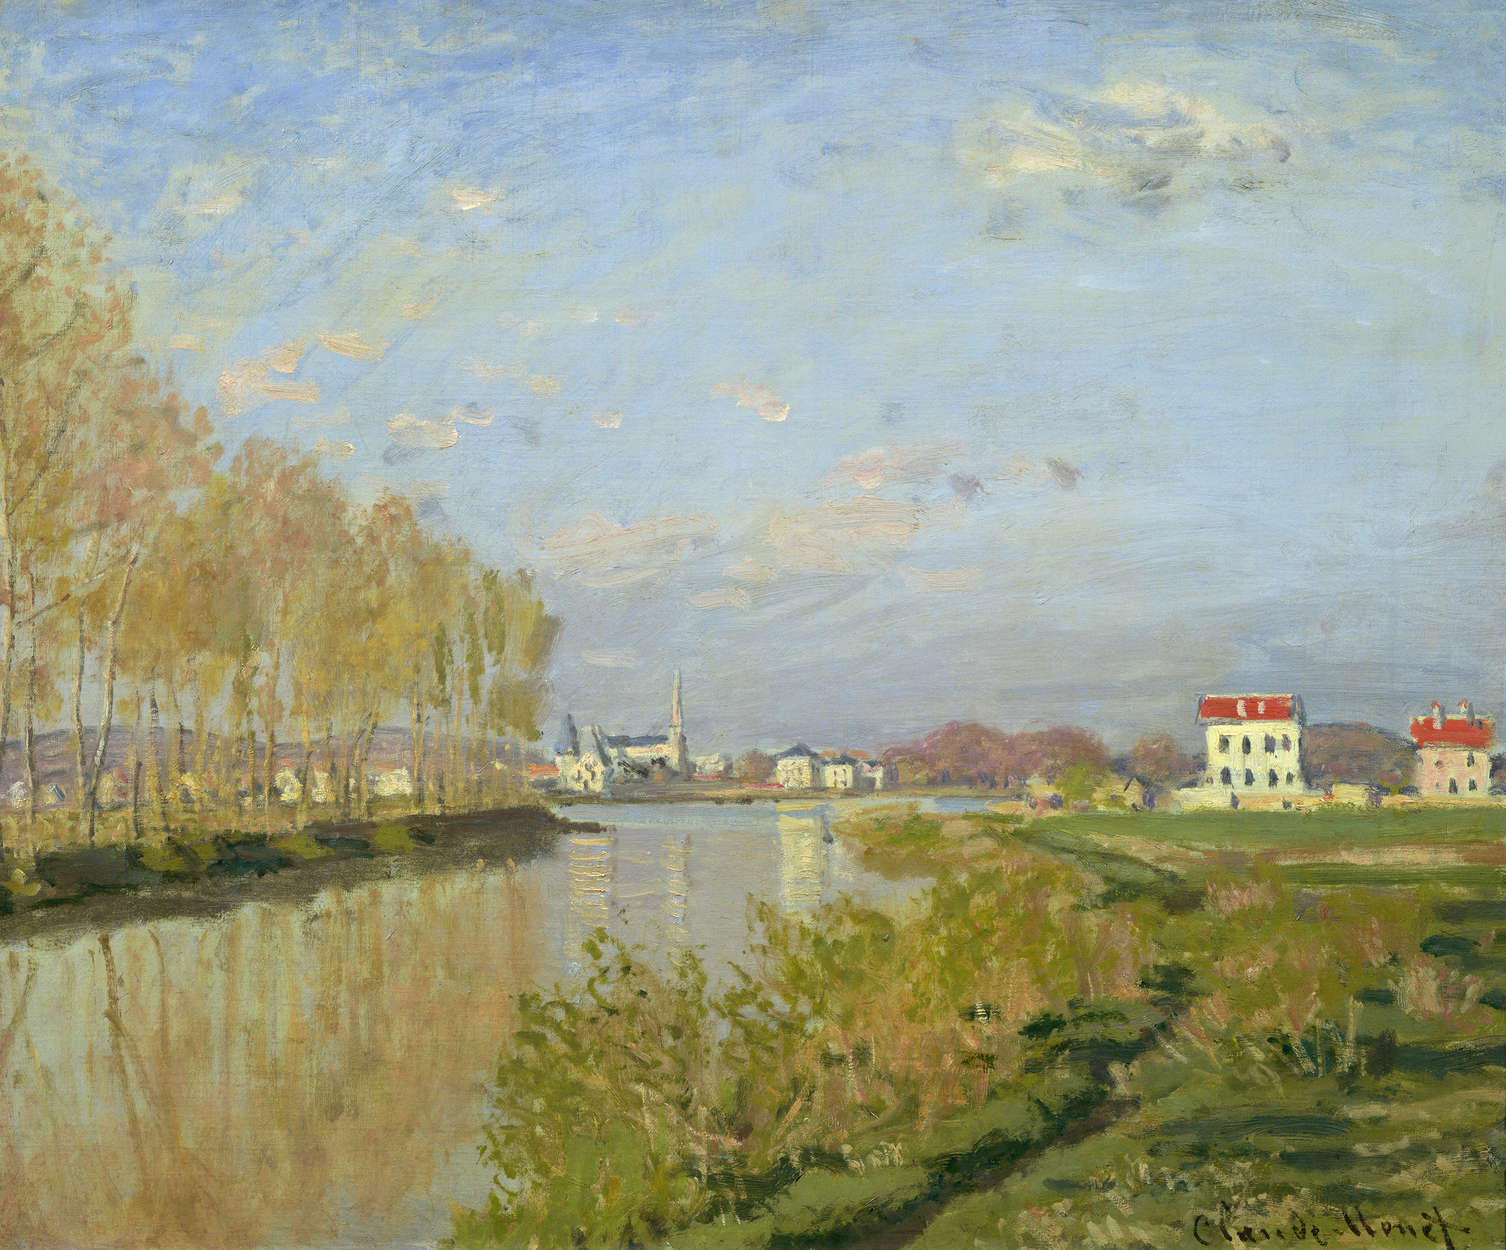             Muurschildering "De Seine in Argenteuil" van Claude Monet
        